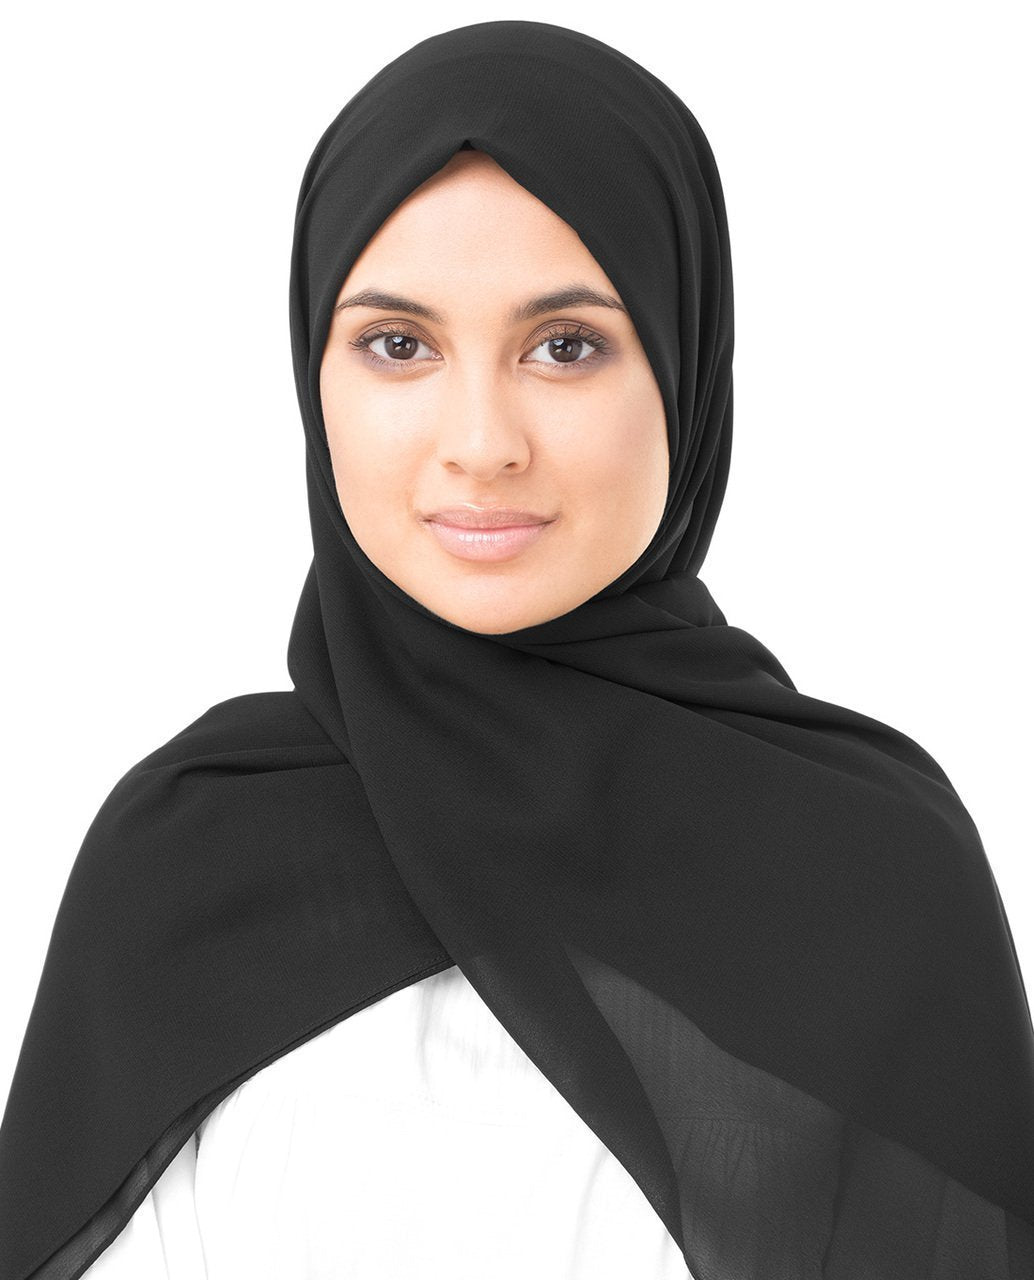 Shop for Georgette Hijab Scarf in Jet Black - ModestPath.com